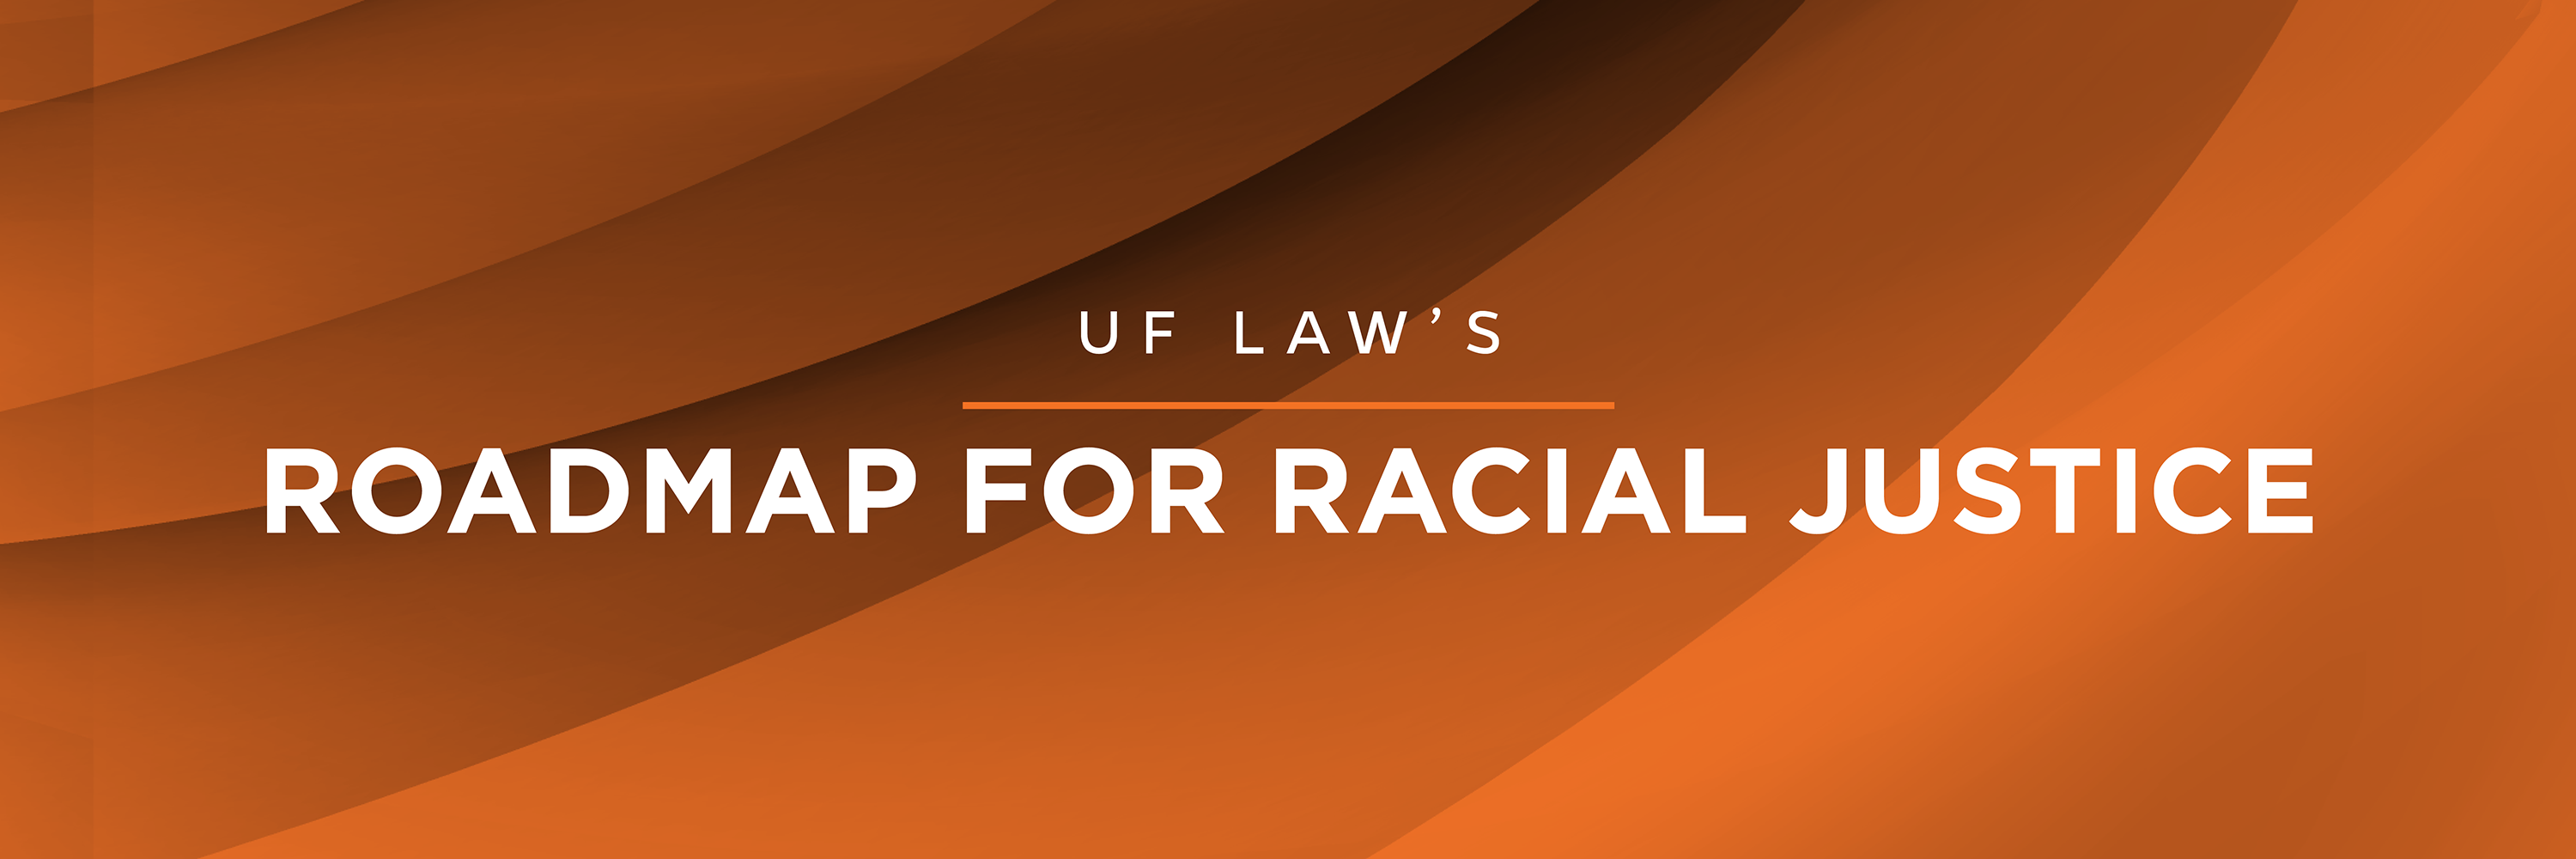 Roadmap for Racial Justice